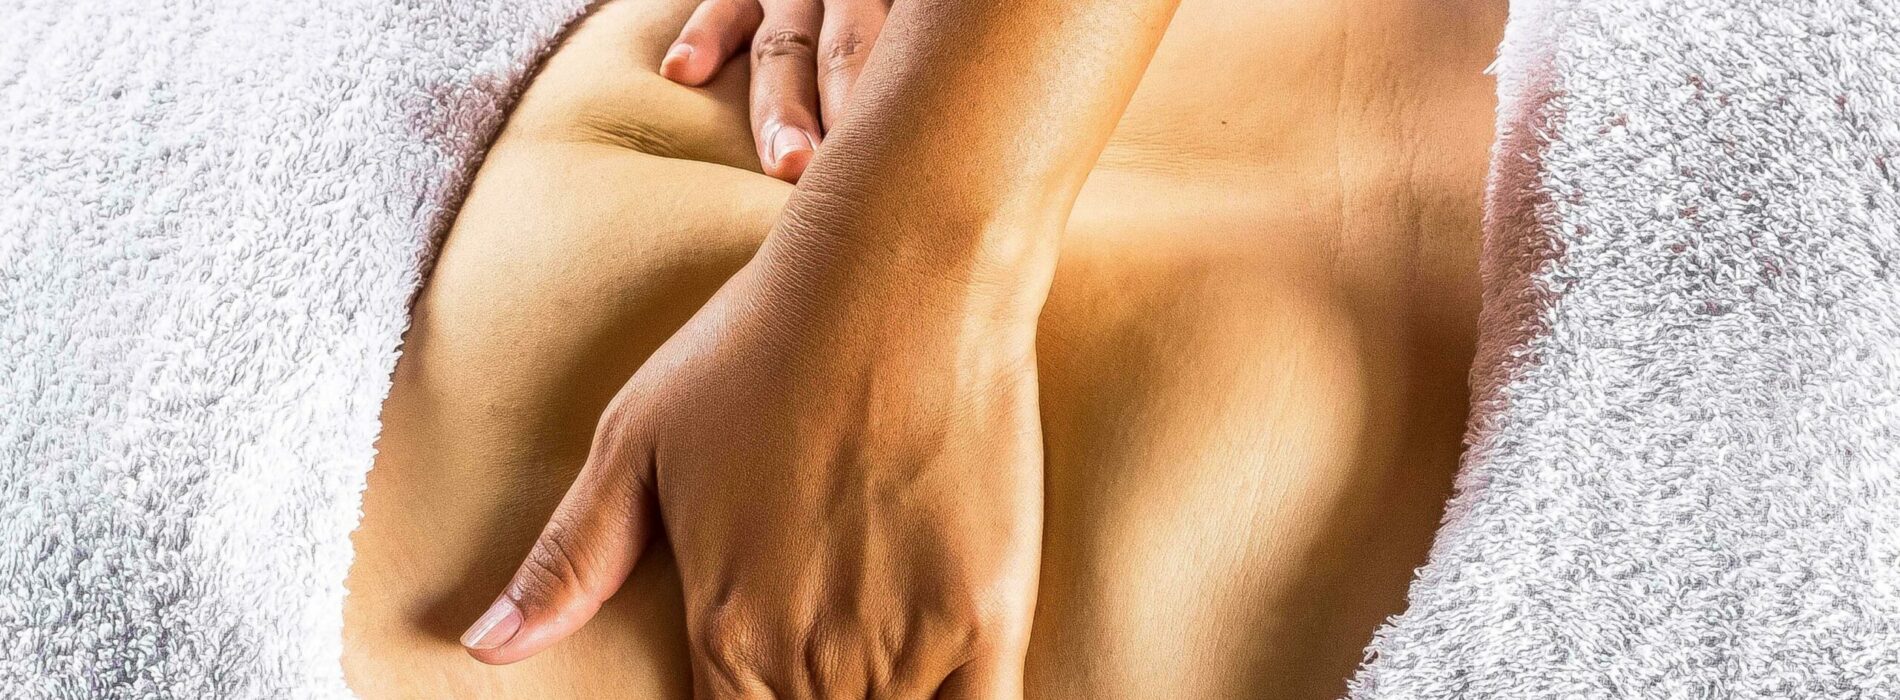 Endermologia – masaż podciśnieniowy, który ma działanie wyszczuplające i antycellulitowe